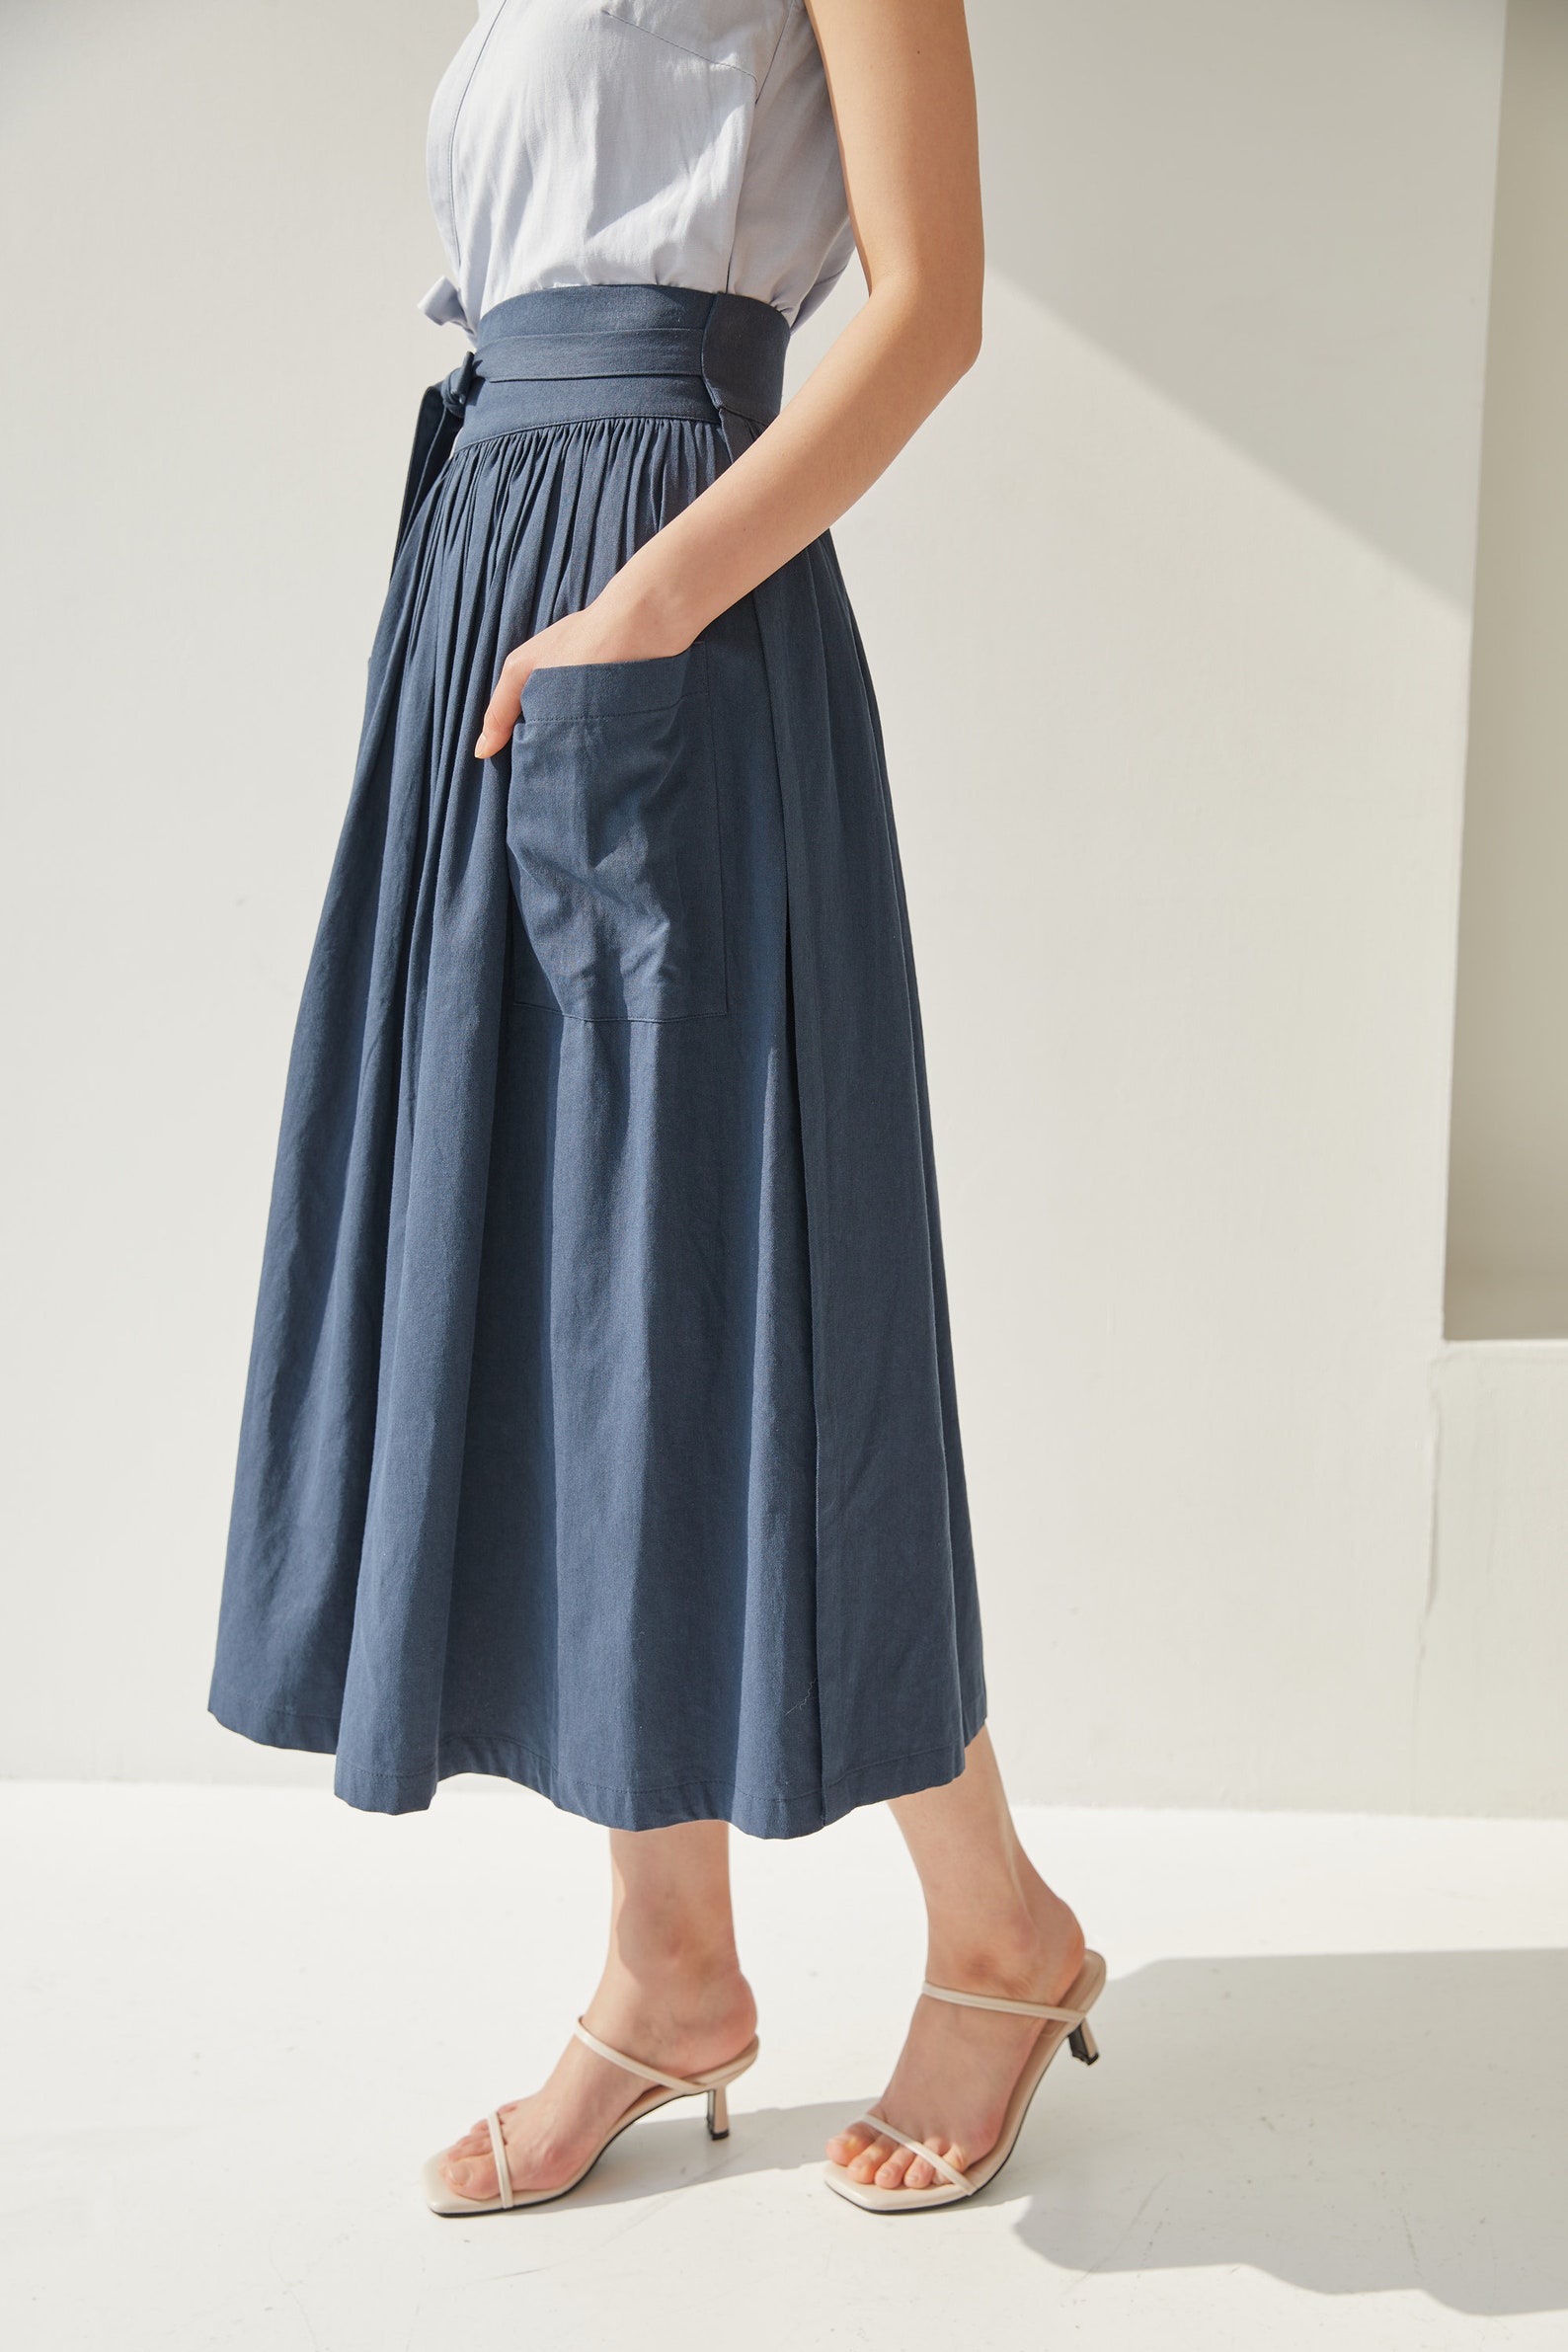 Modern Hanbok Skirt Women's High Waist Wrap Skirt Deep - Etsy UK